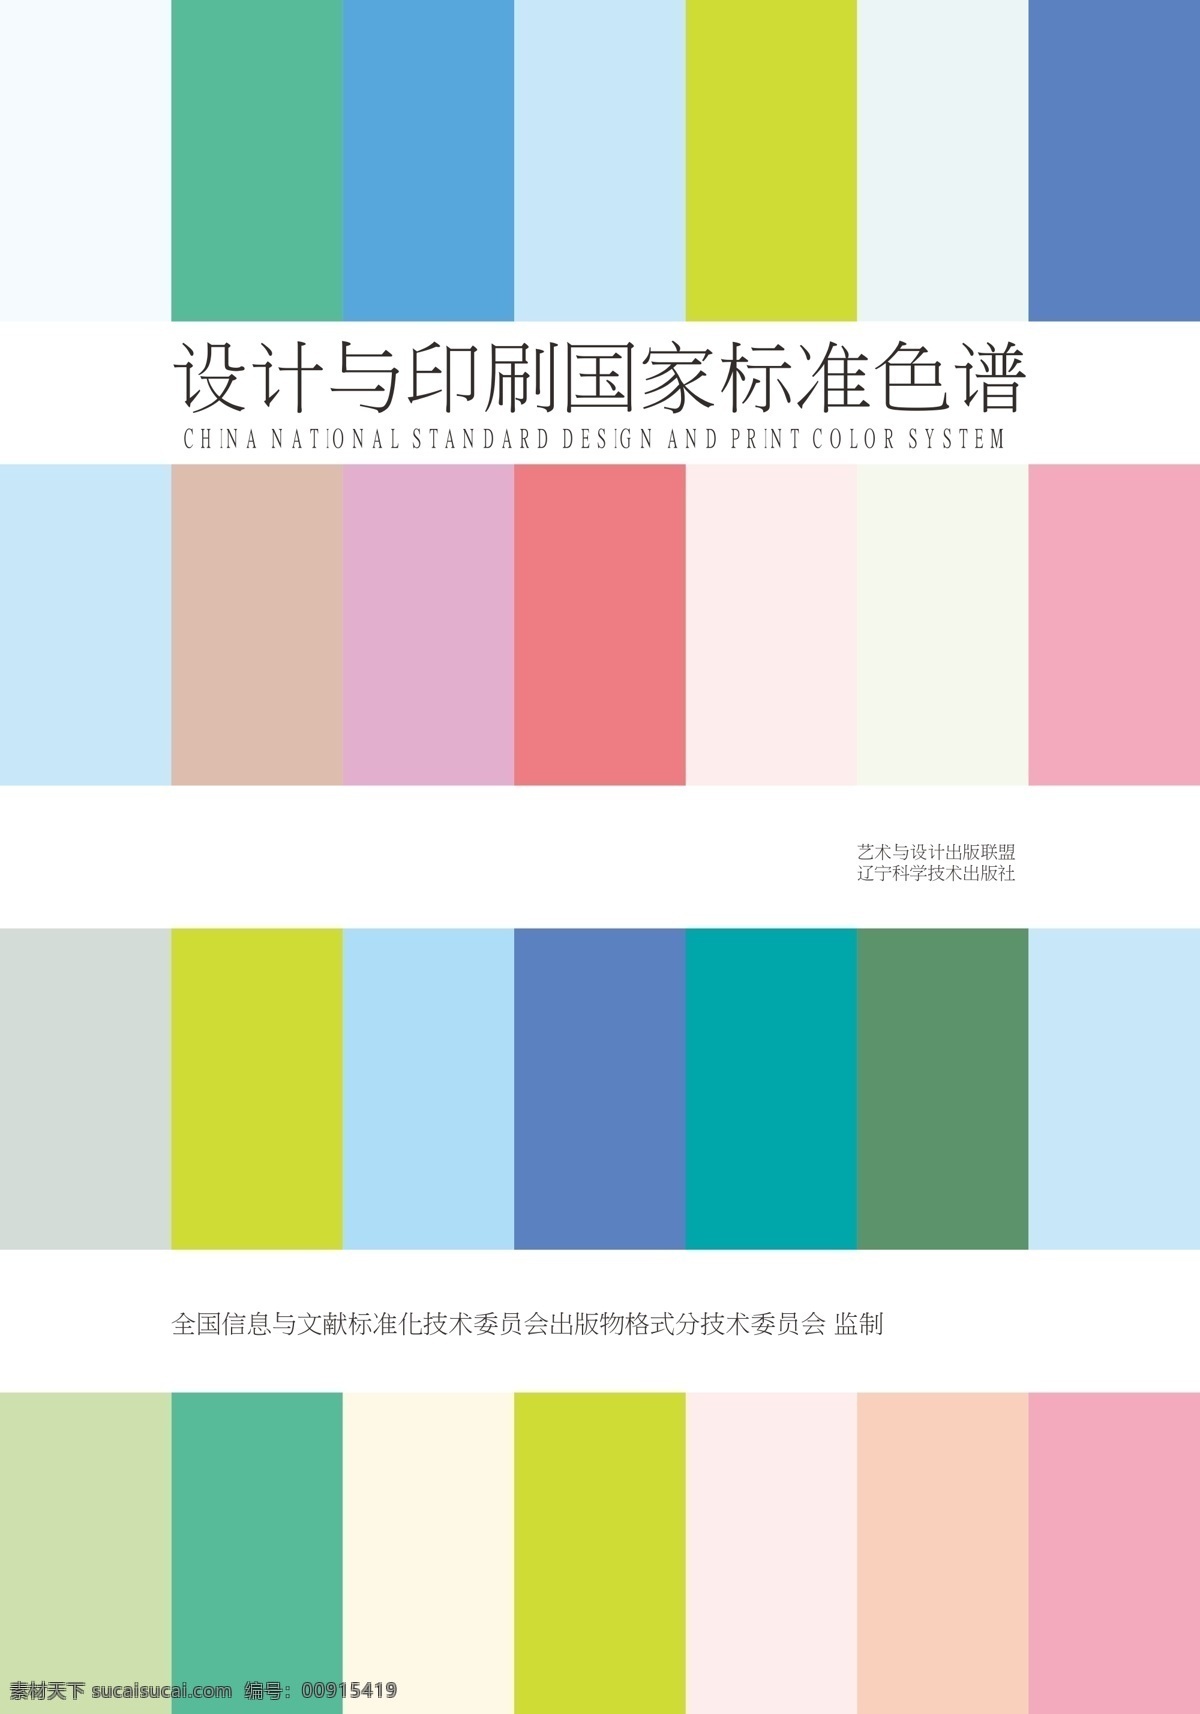 色谱 国家标准色谱 标 标准色谱 颜色 色样 印刷色 印刷颜色 印刷色谱 设计与印刷 出版印刷 包装 装潢 艺术 出版色谱 包装设计